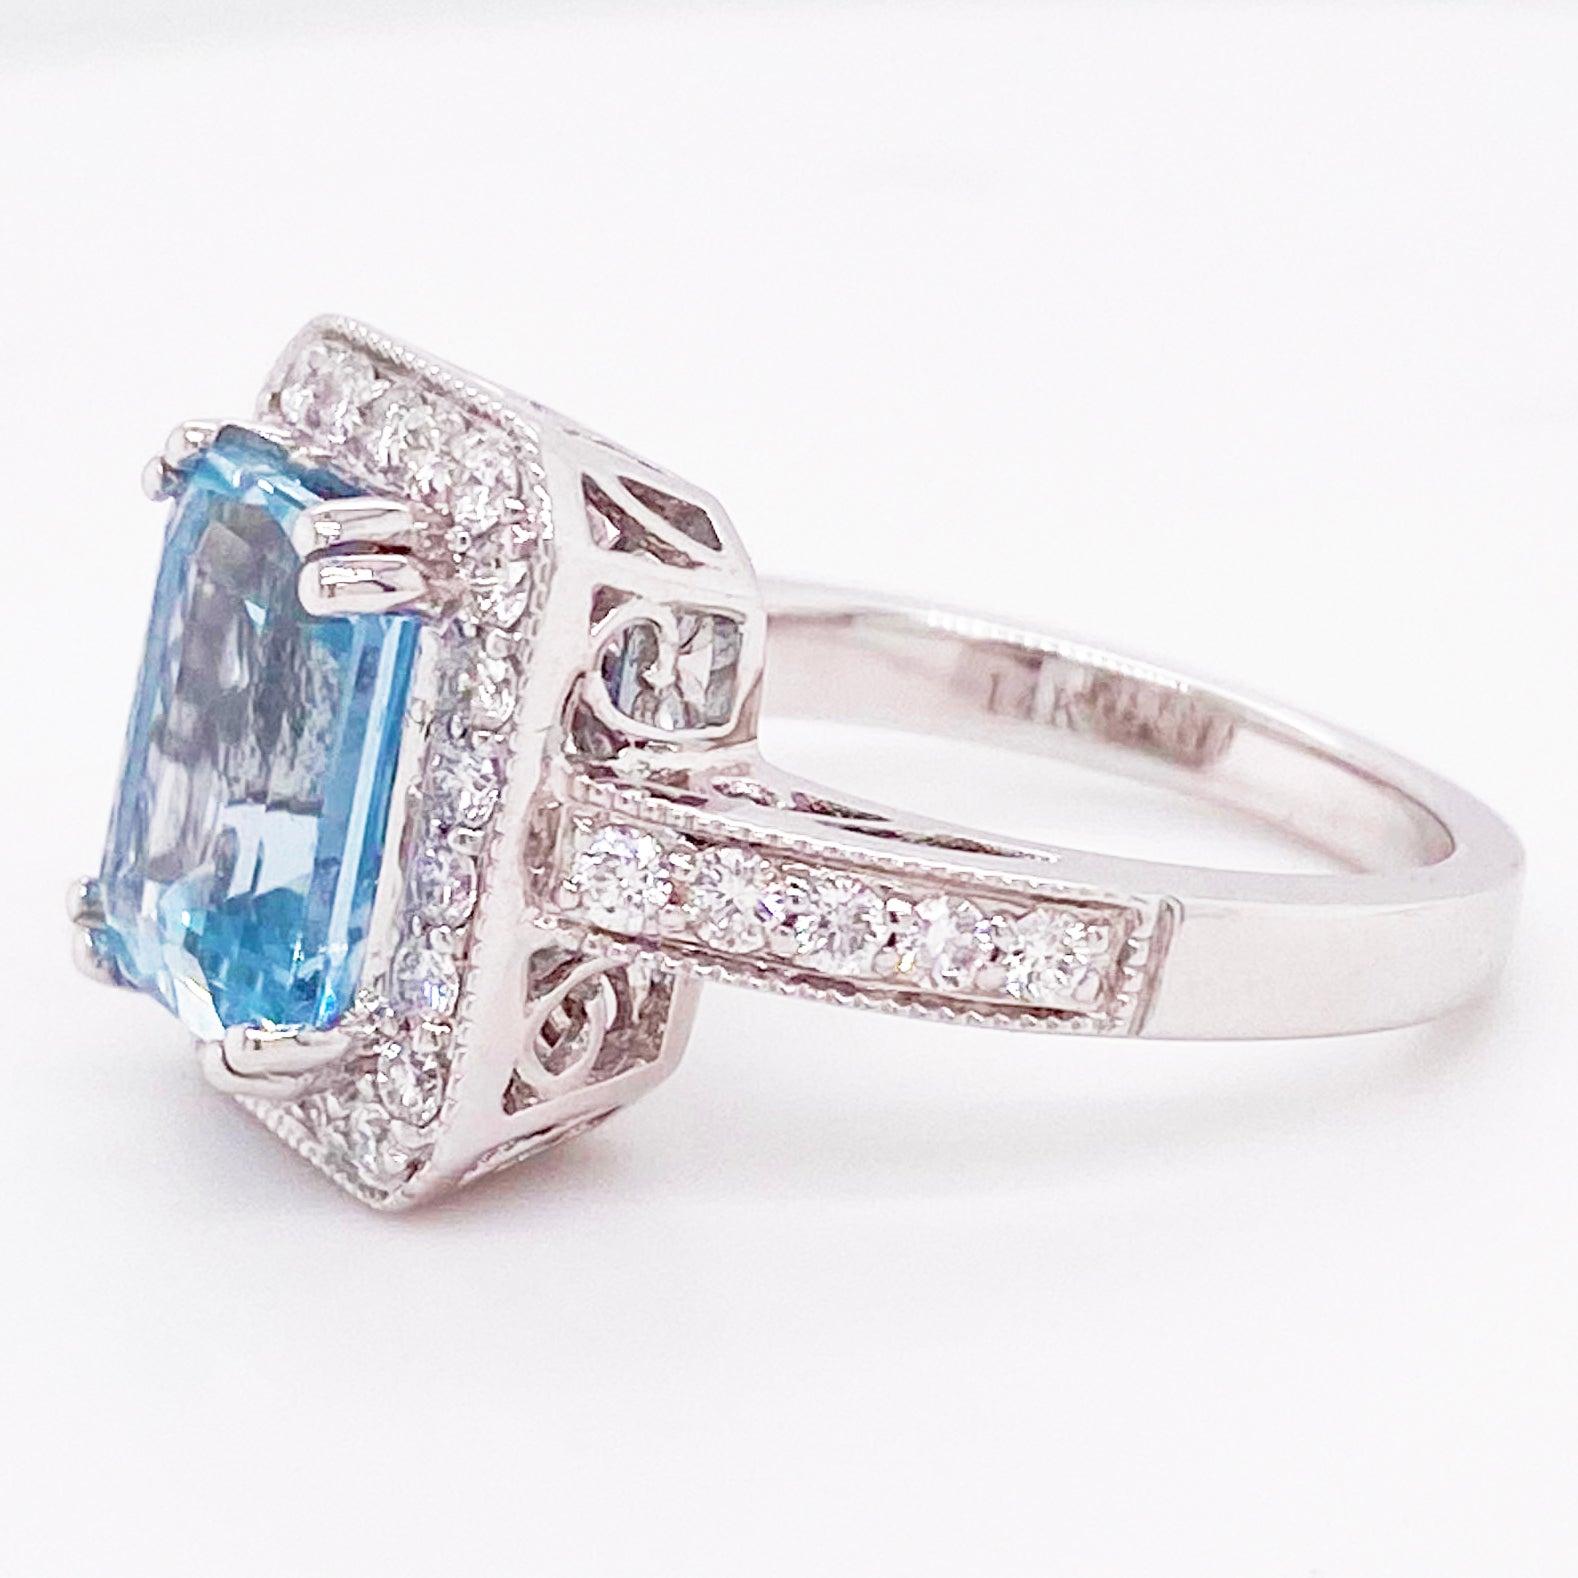 Aquamarine Diamond Ring, 14 Karat White Gold, Halo, 3 Carat Engagement Ring 3